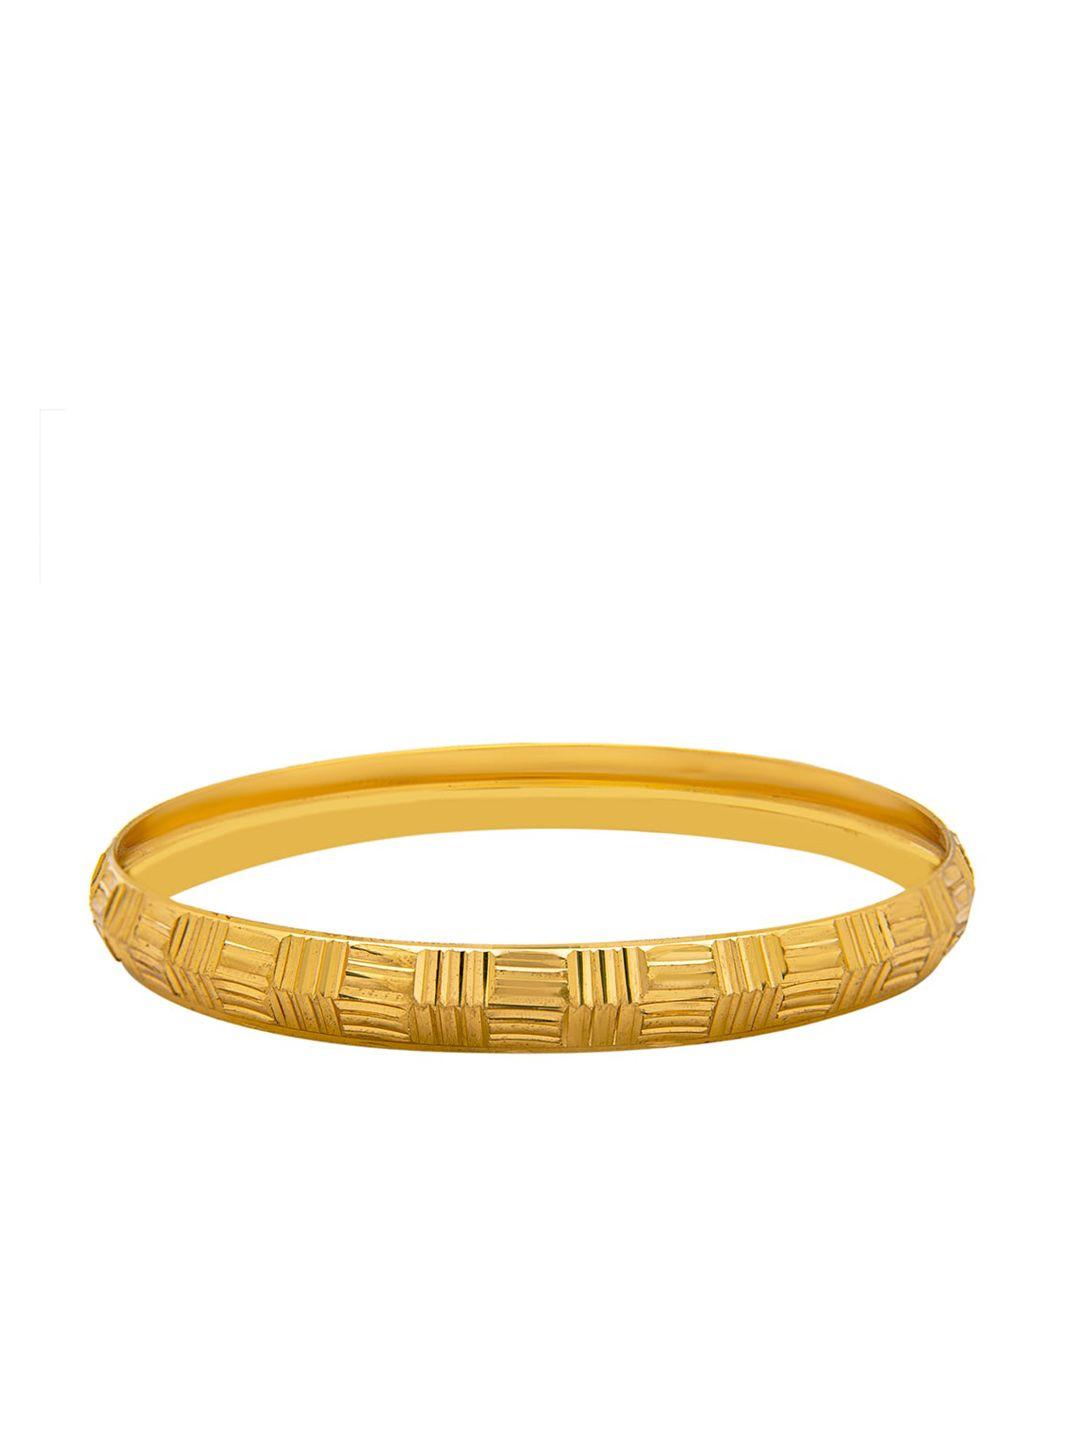 bodha men gold bracelet